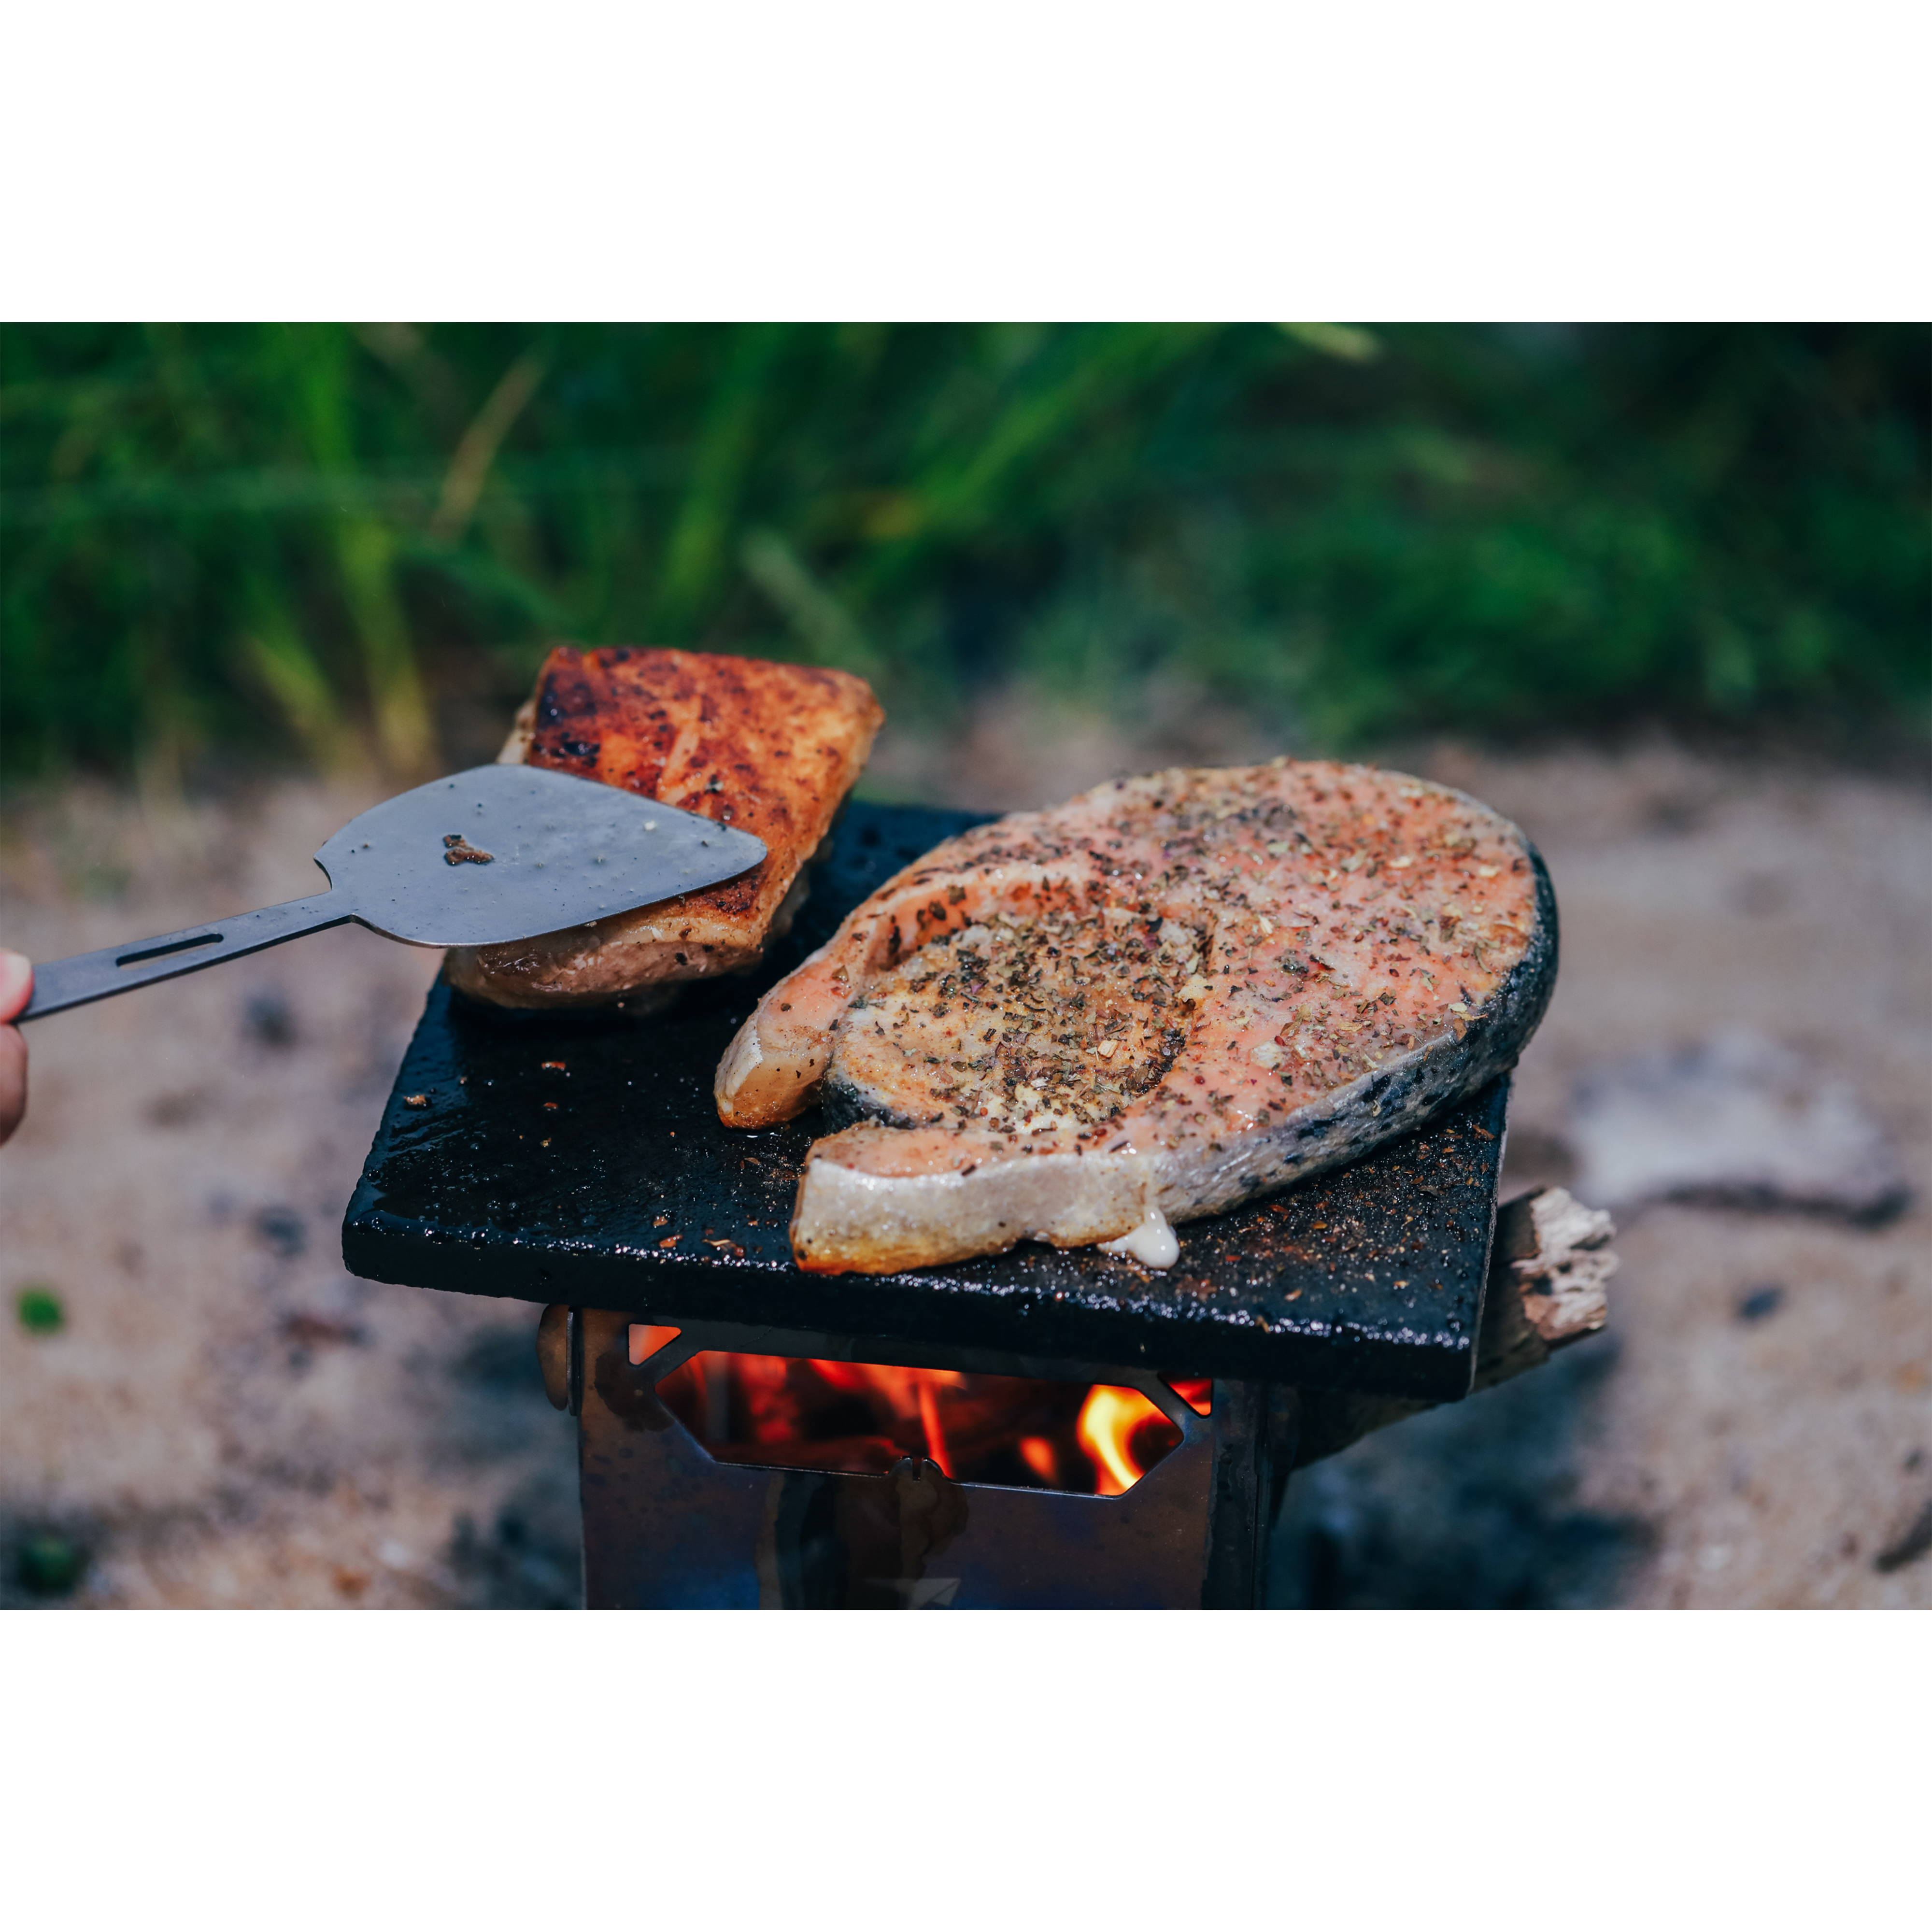 Att laga mat under camping: Tips och recept för minnesvärda måltider utomhus